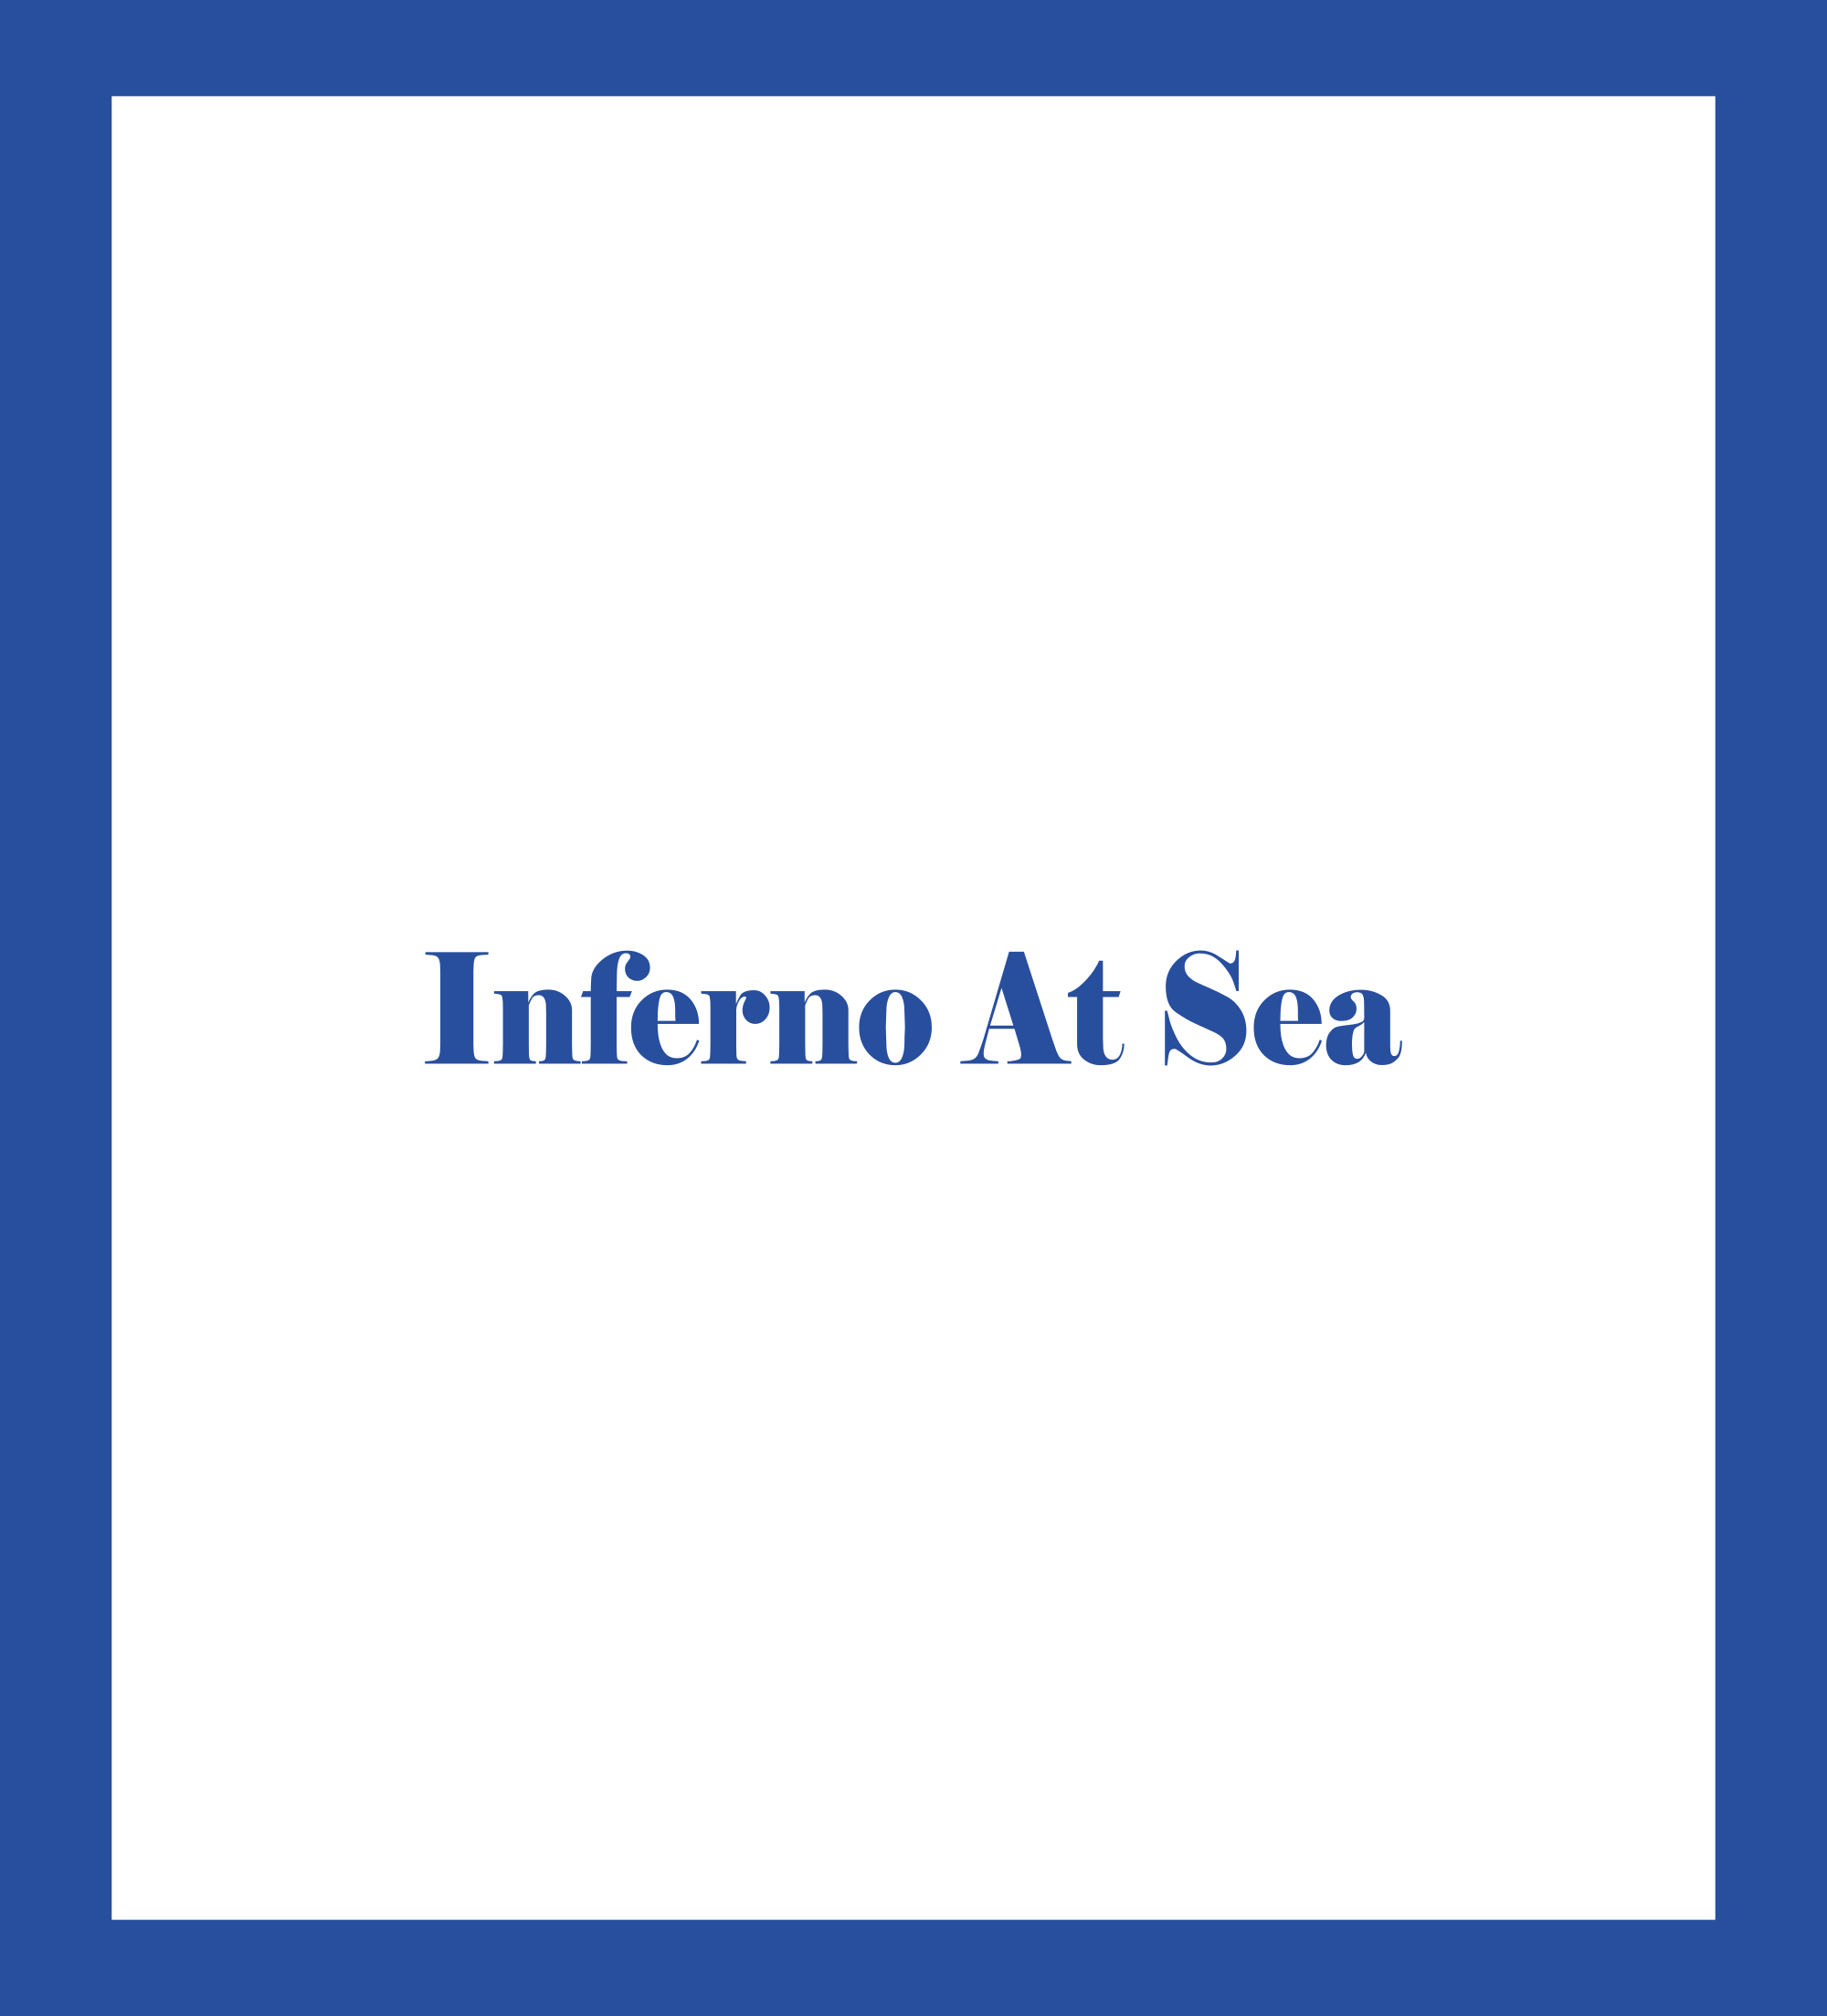 Caratula de Inferno At Sea (Infierno en el mar) 